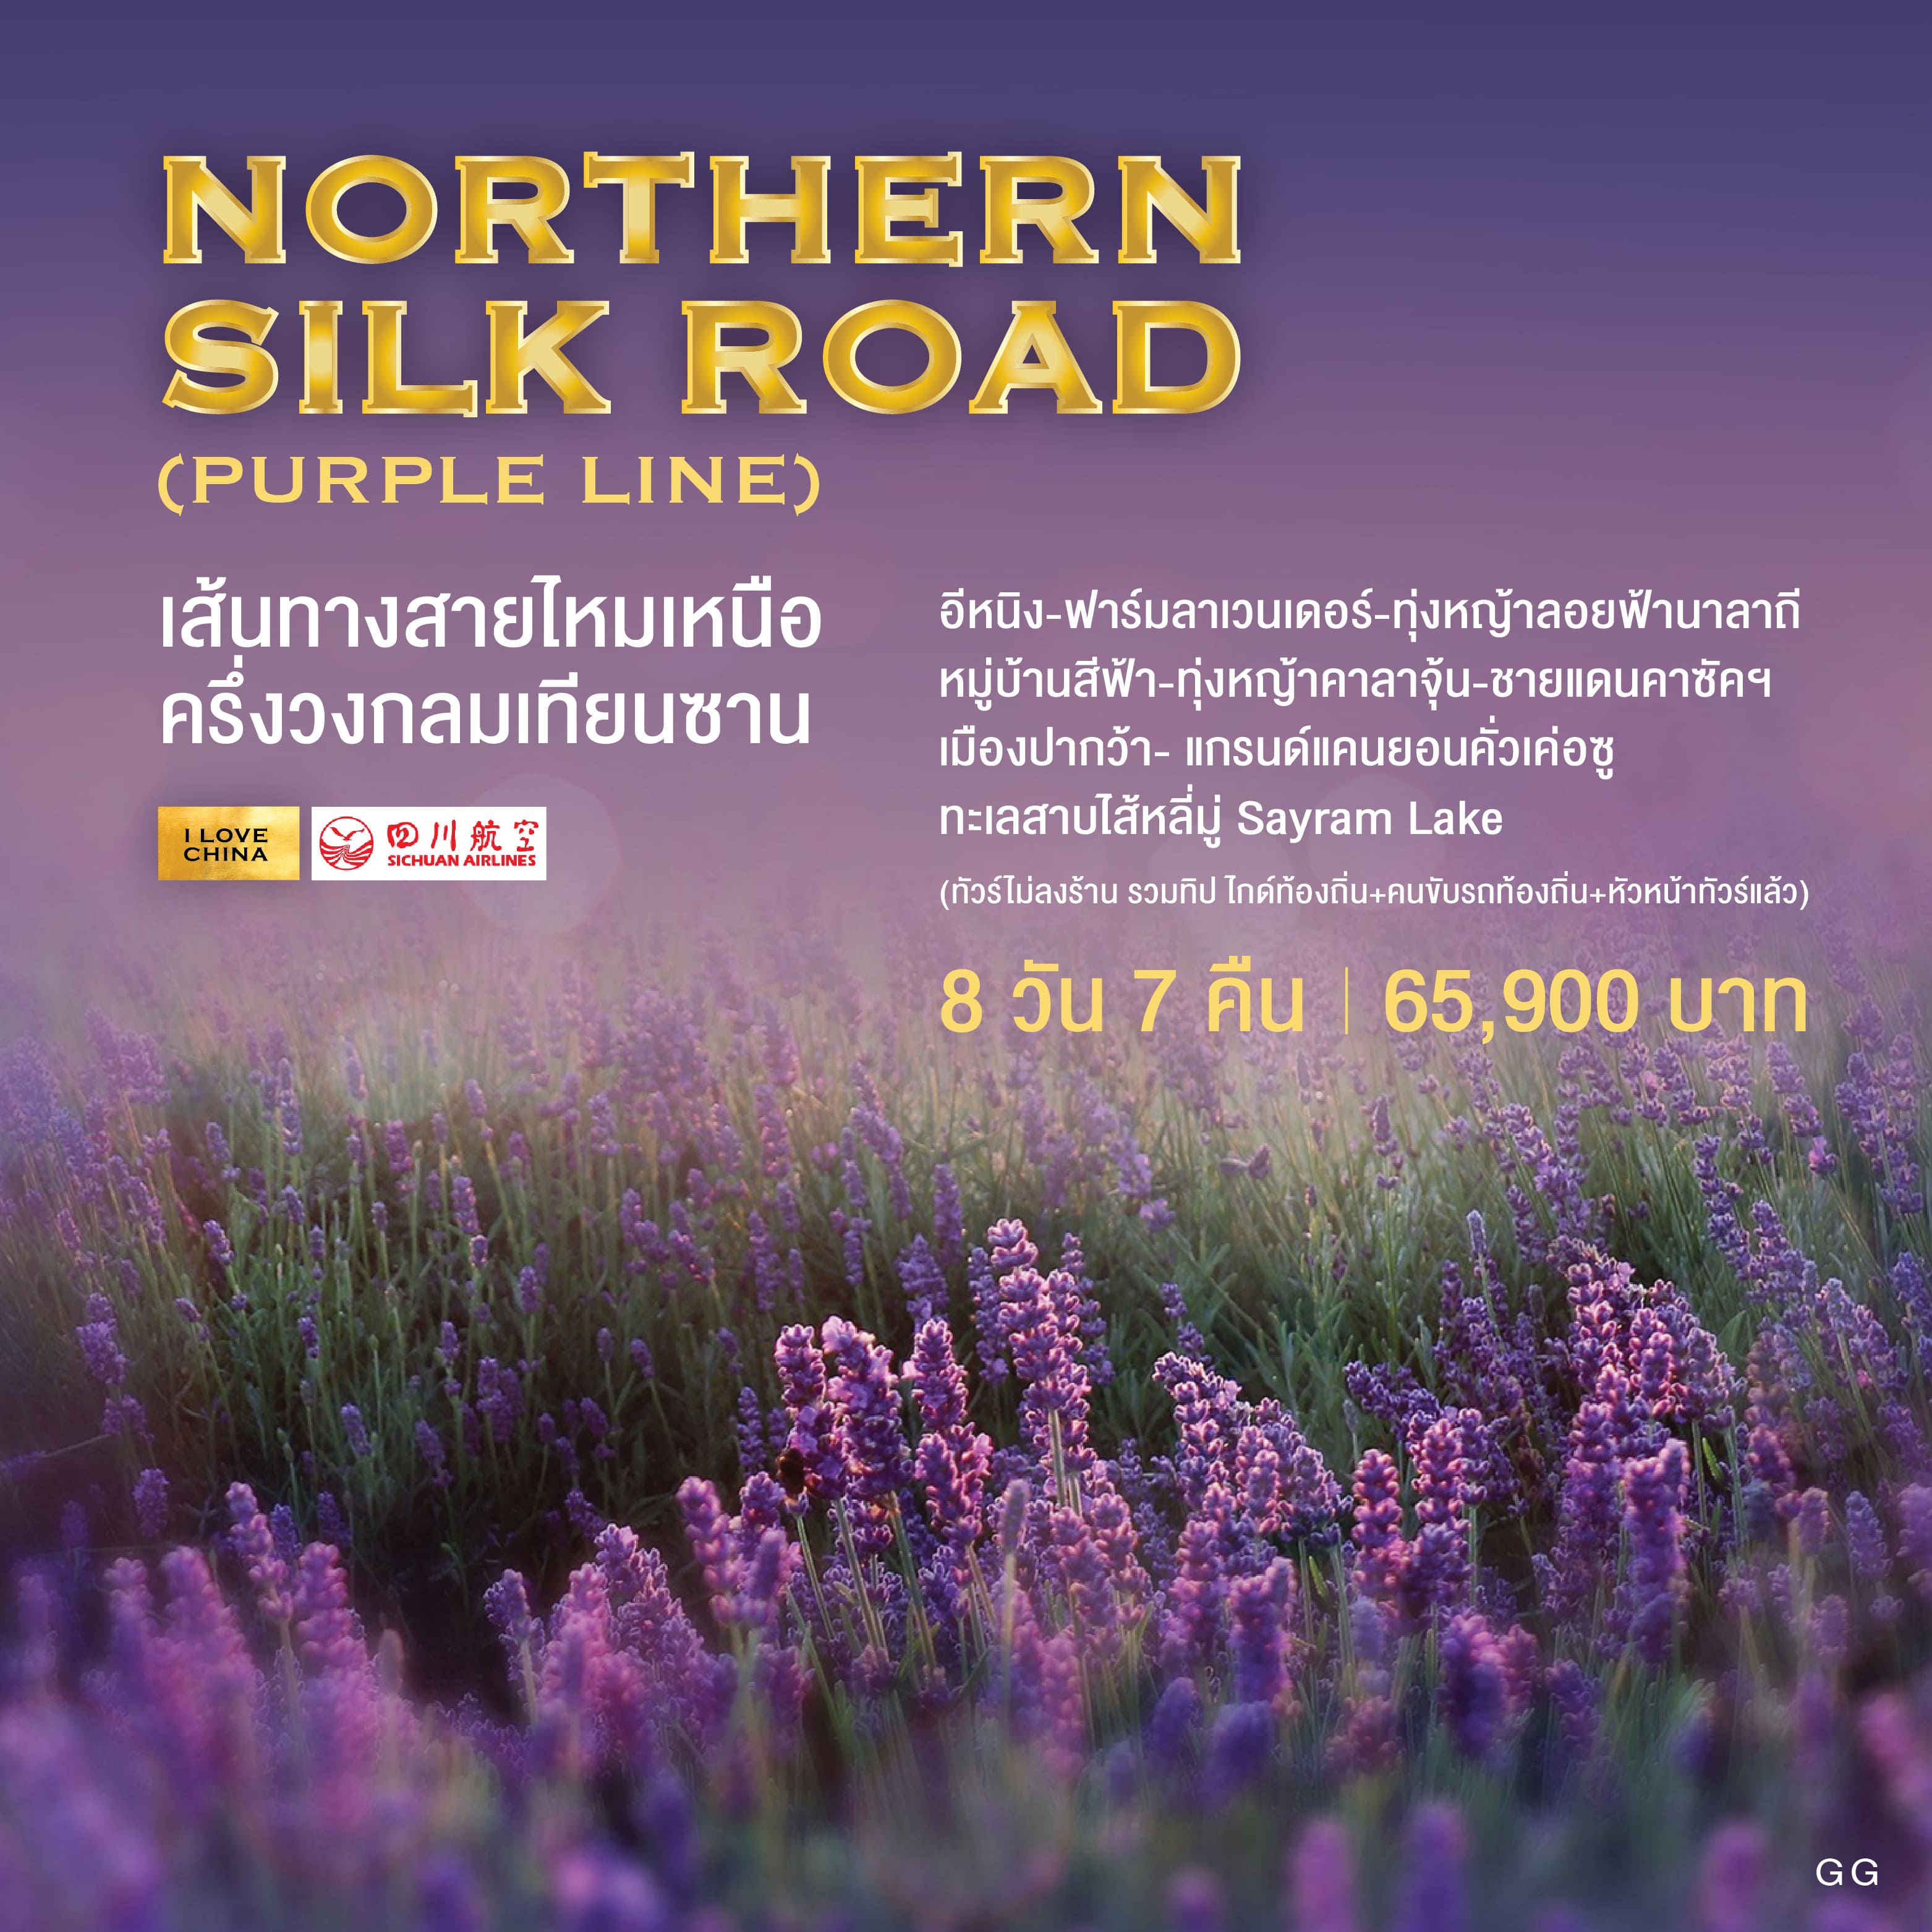 ทัวร์จีน Northern Silk Road เส้นทางสายไหมเหนือ ครึ่งวงกลมเทียนซาน 8วัน 7คืน (3U)